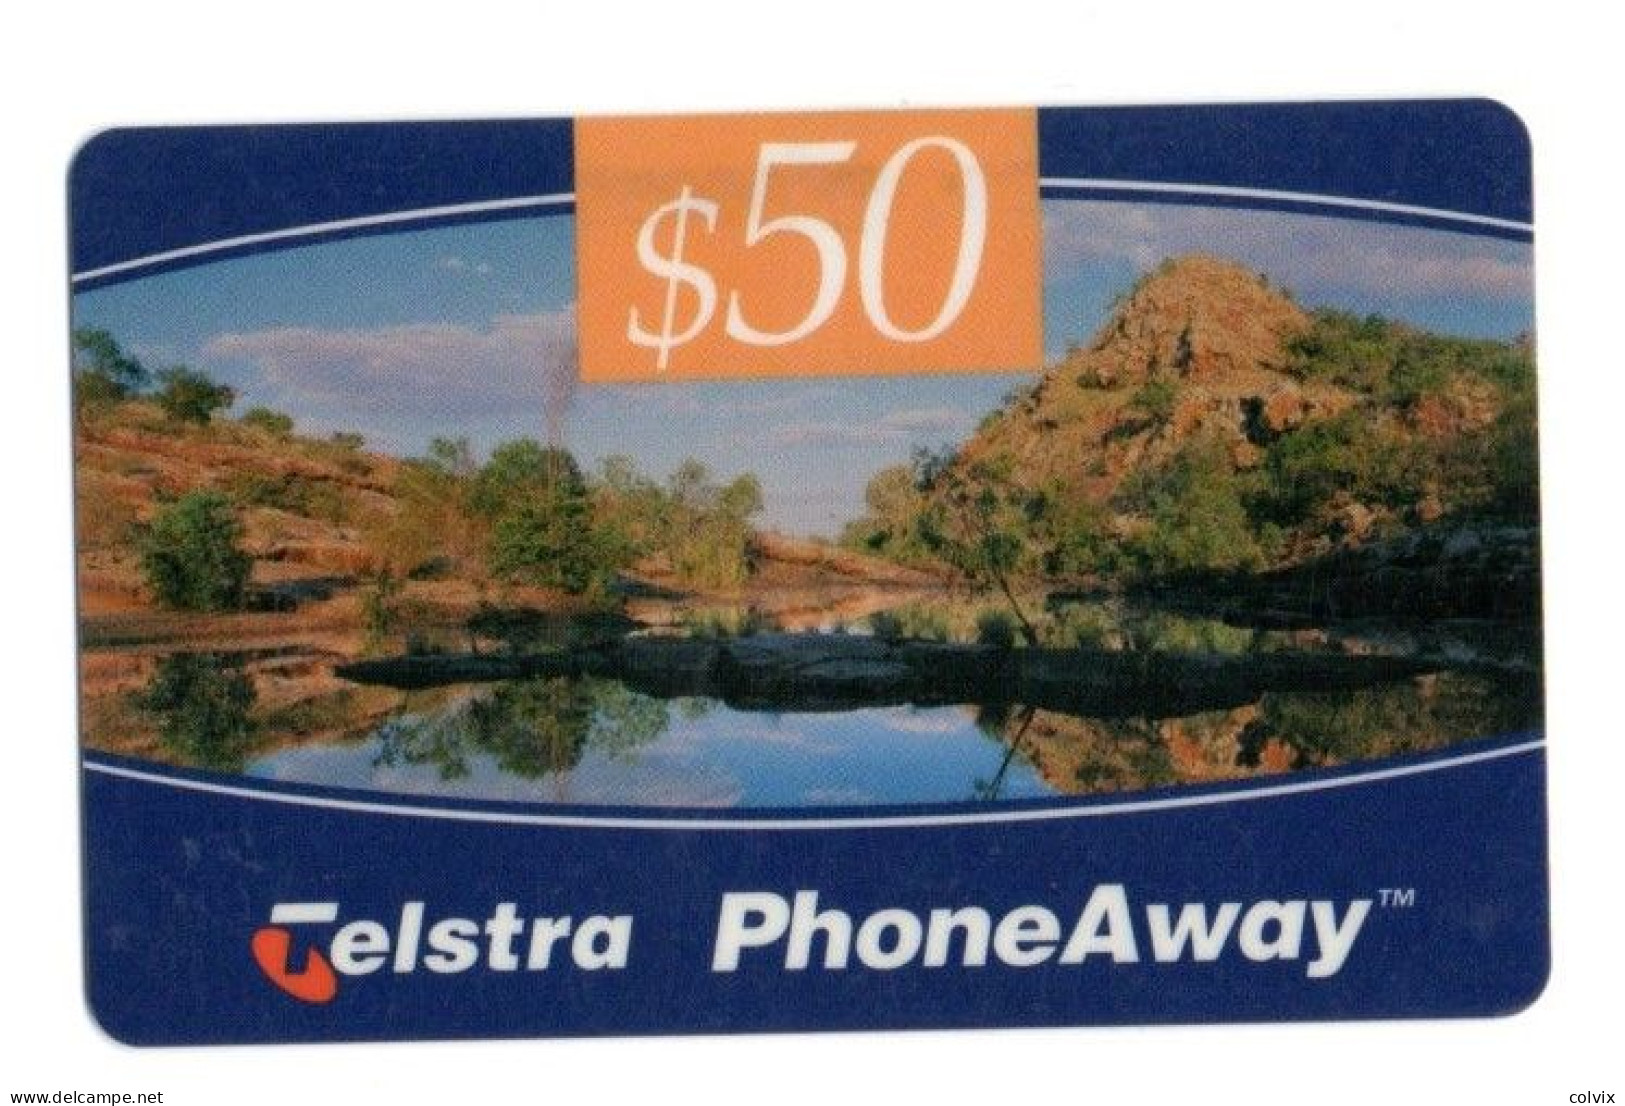 AUSTRALIE CARTE RECHARGE TELSTRA PHONEAWAY CARD 50$ Date Exp. 09/1998 - Tsjaad